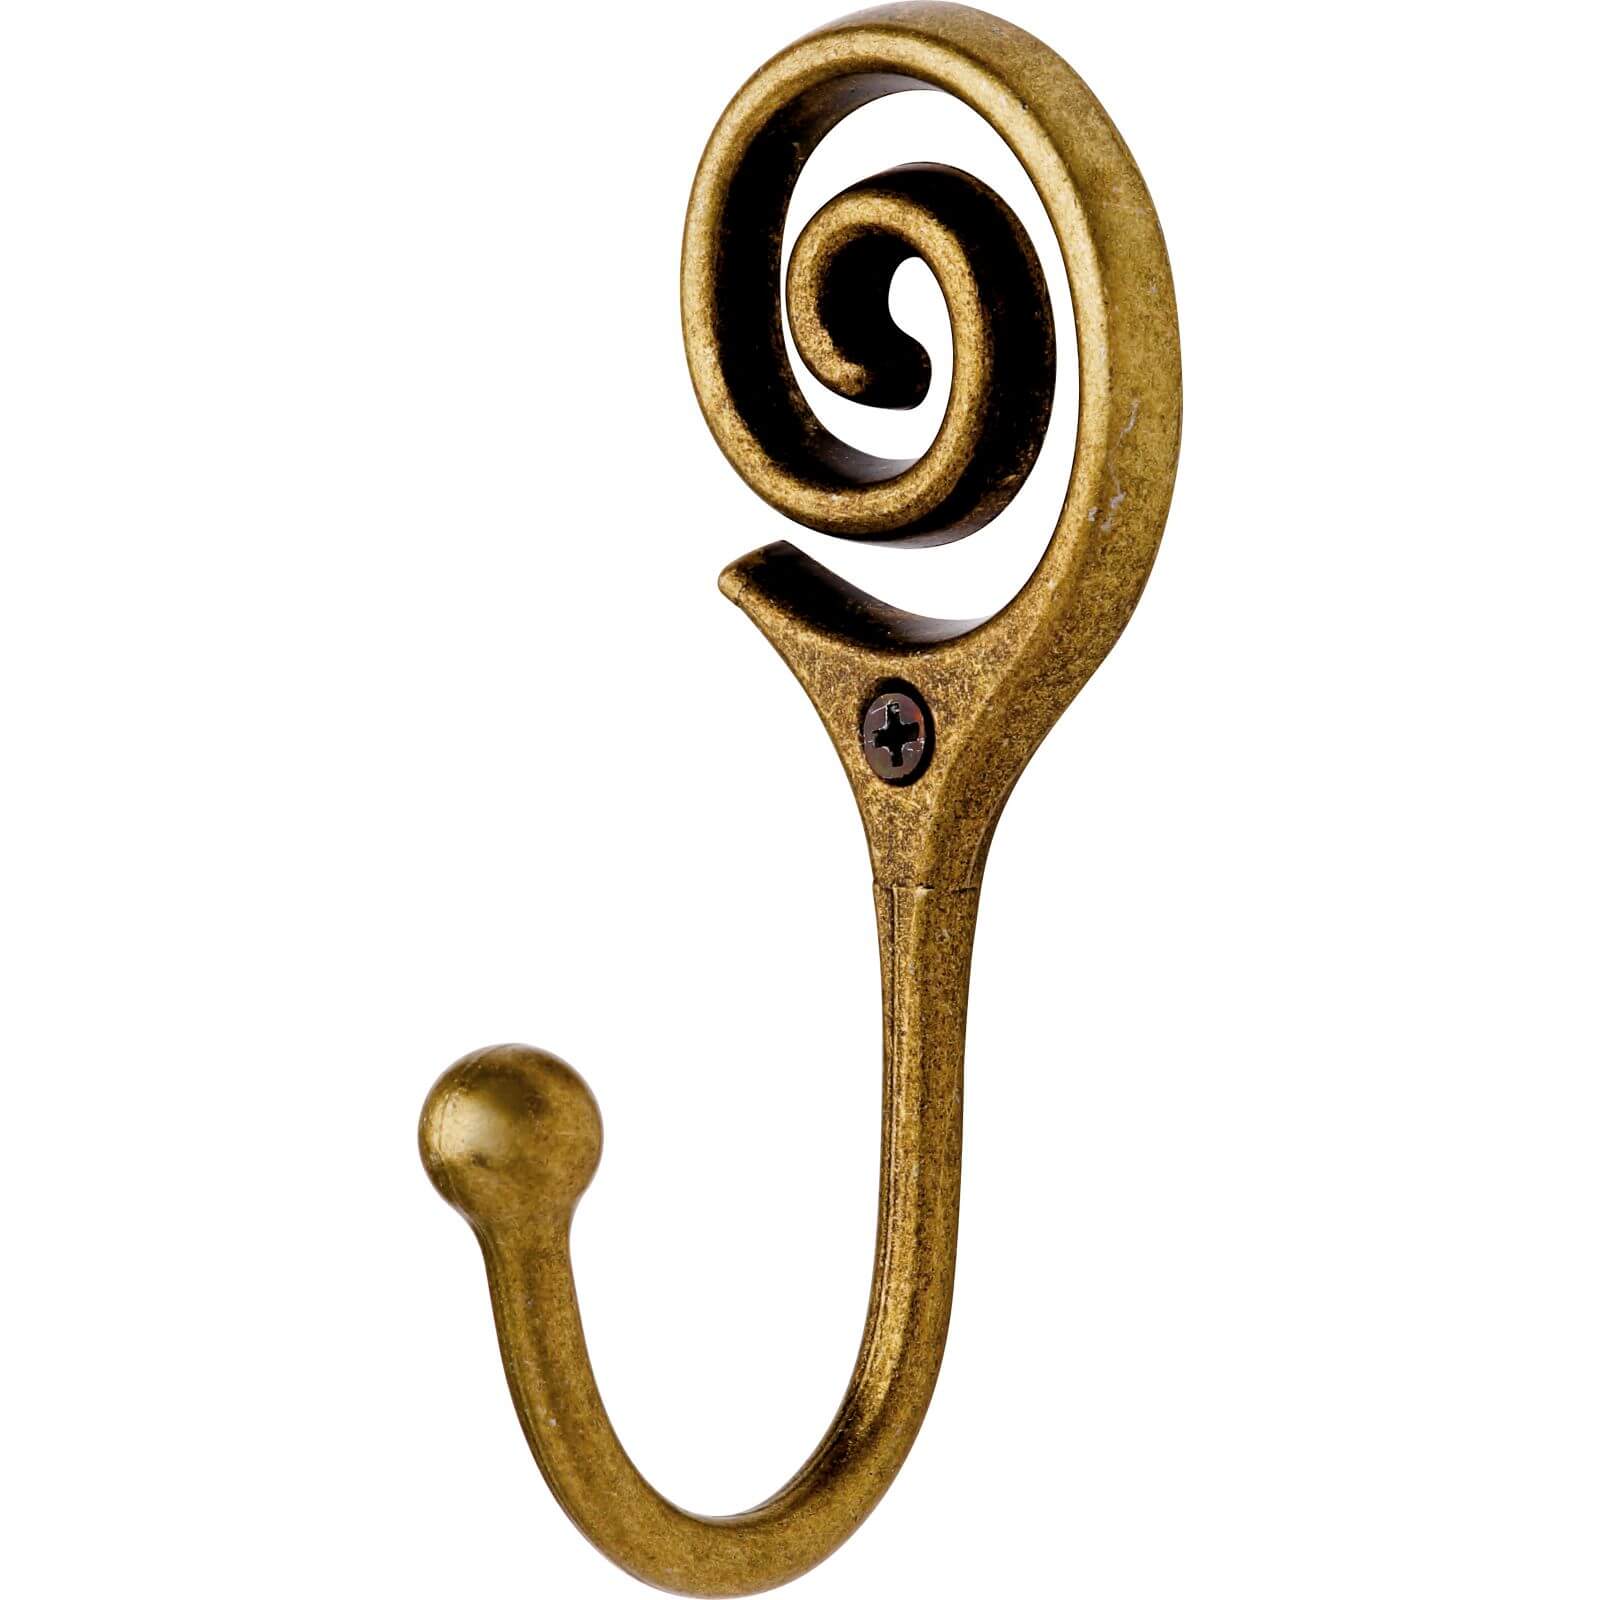 Harrison Drape Twist Hook Antique Brass - 2 pack